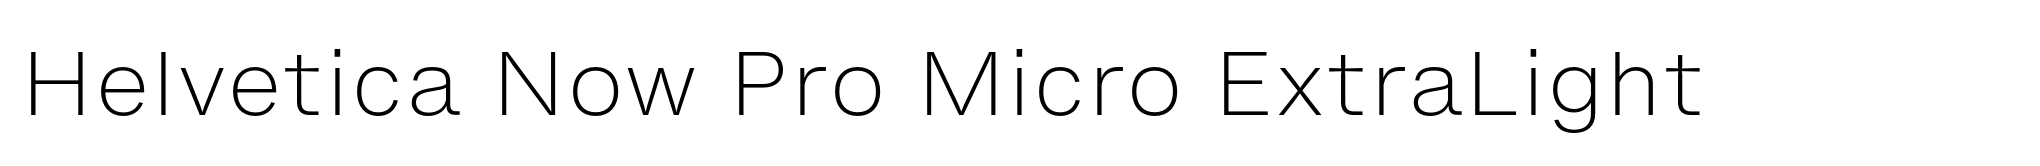 Helvetica Now Pro Micro ExtraLight image